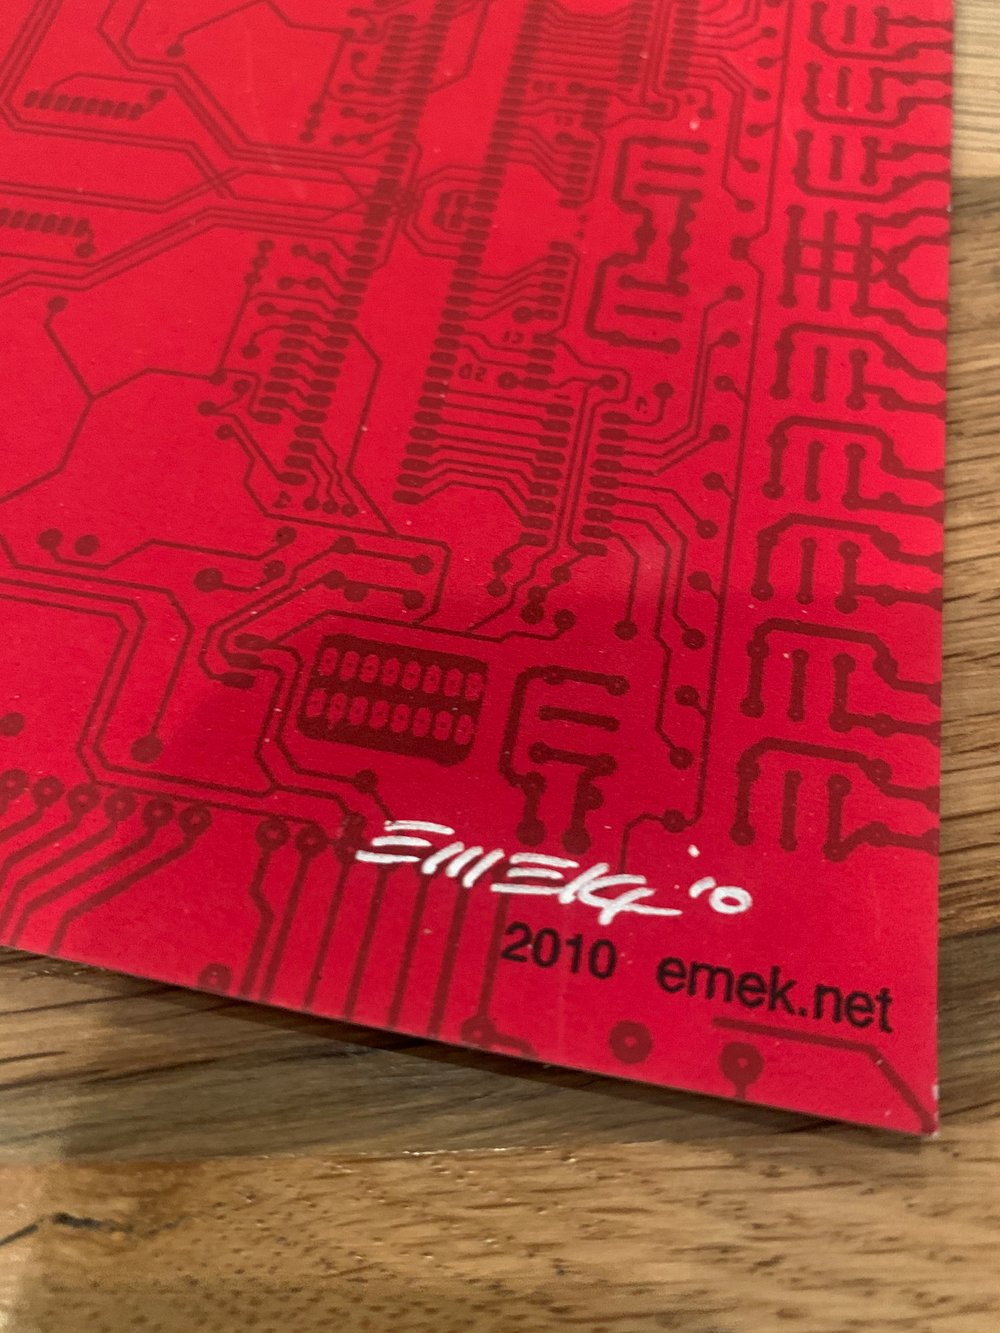 Deadmau5 Silkscreen Concert Poster By EMEK, Signed By The Artist